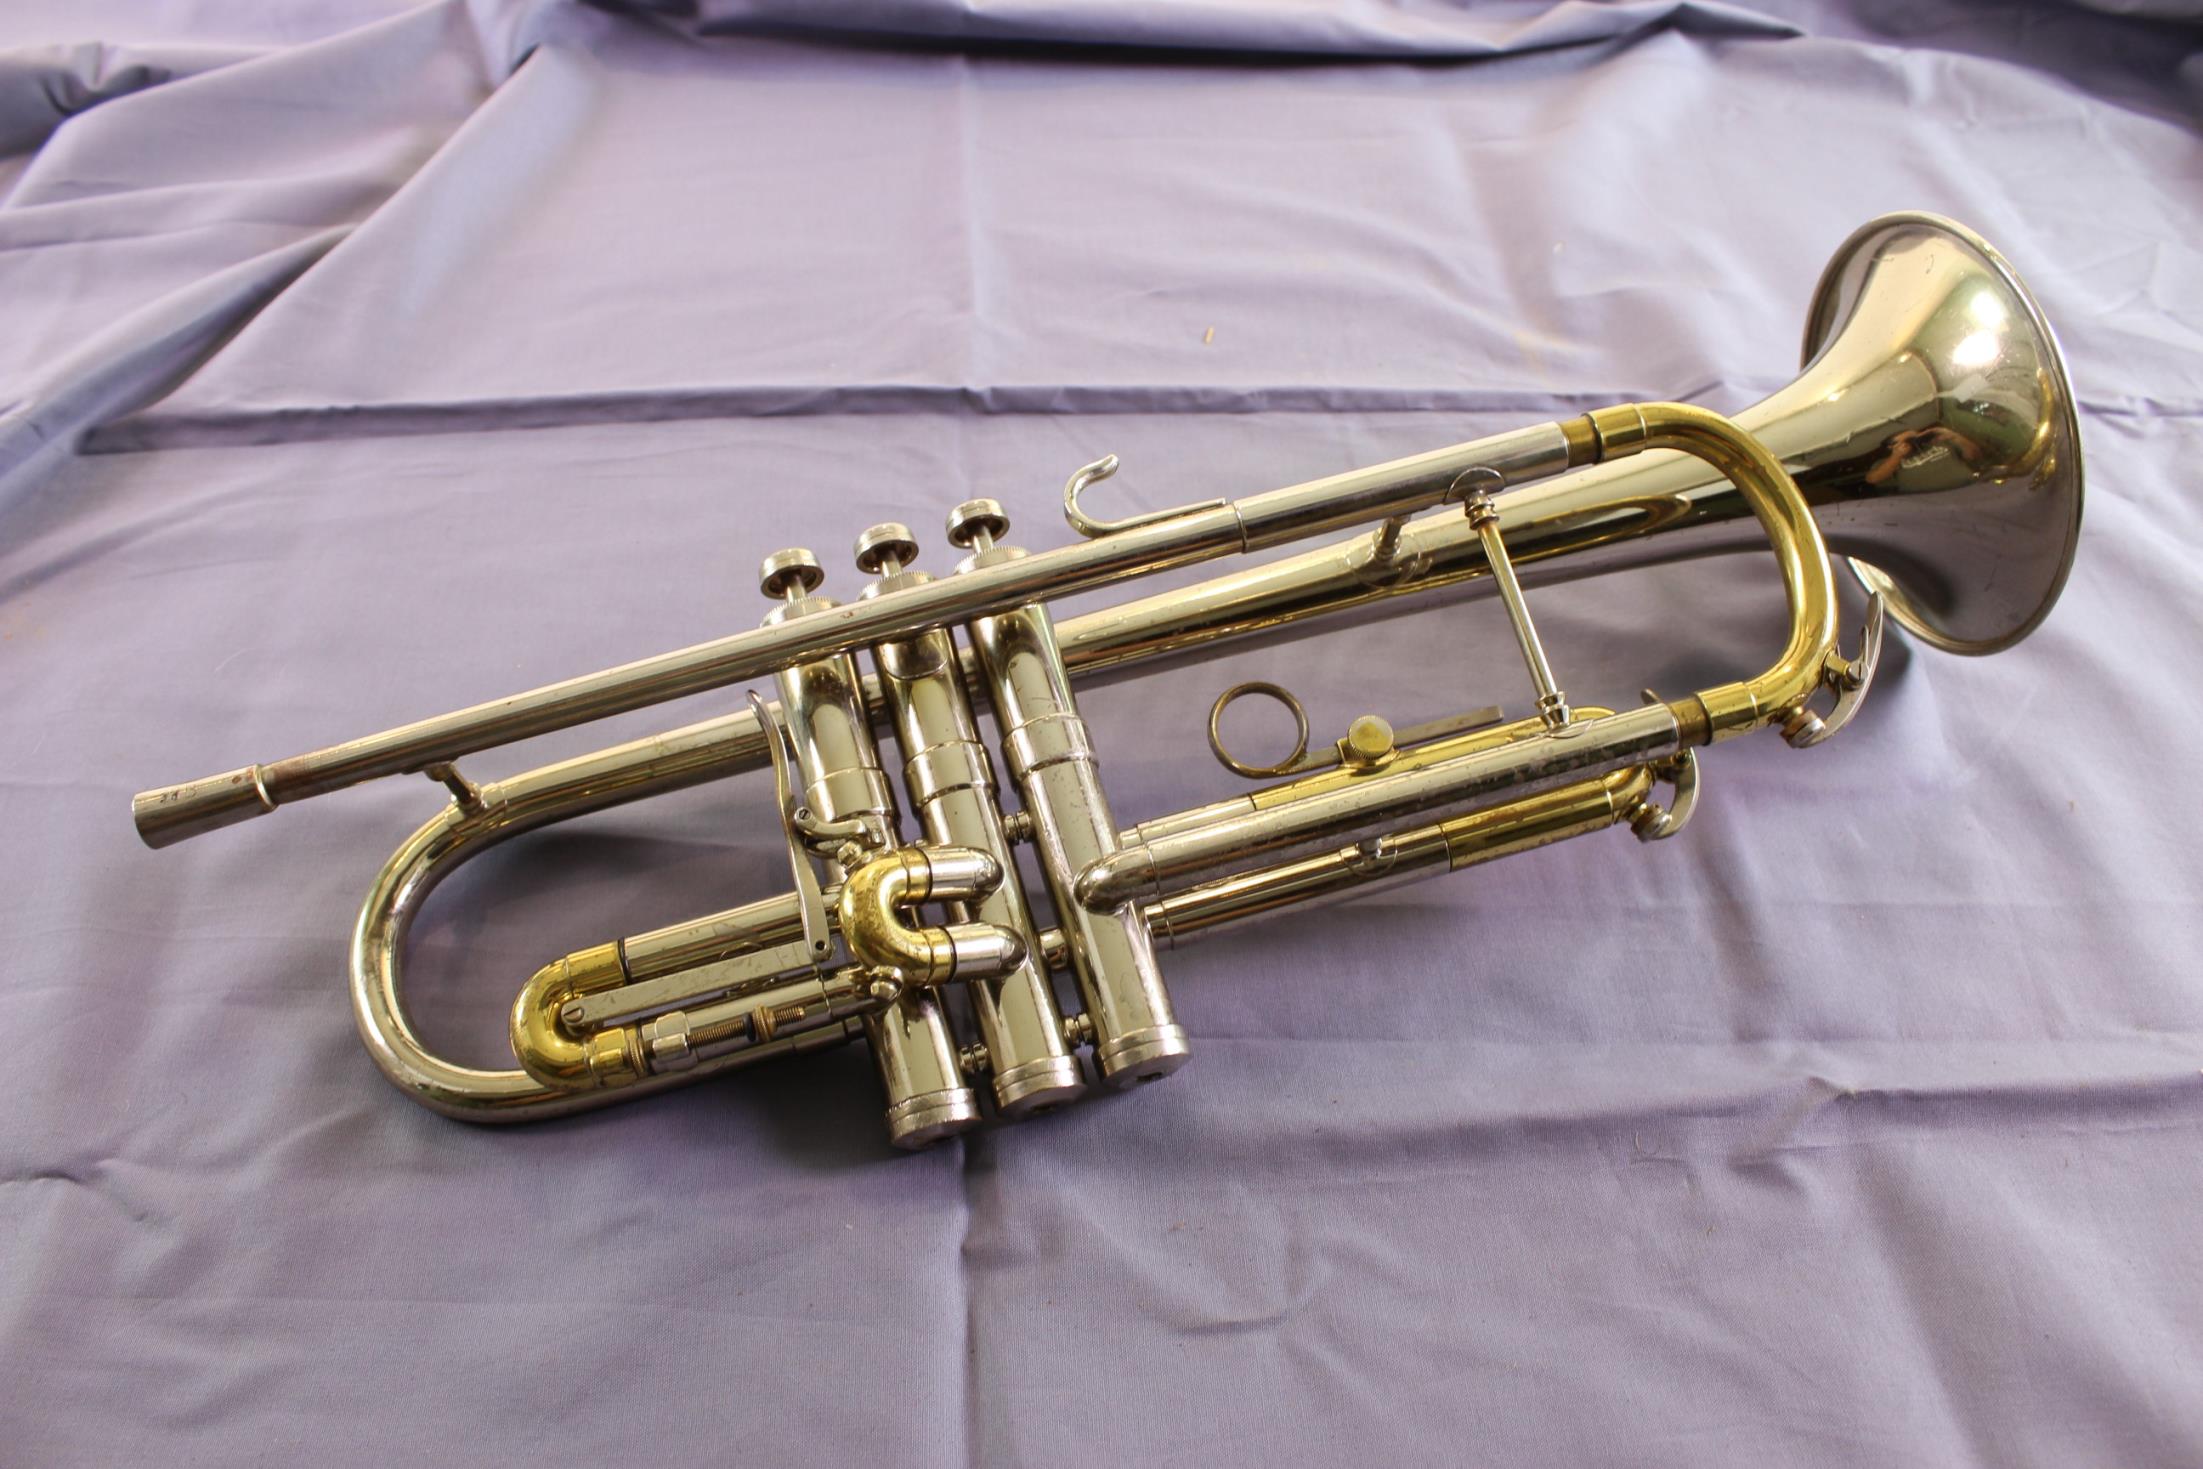 conn trumpet serial number n18733 model